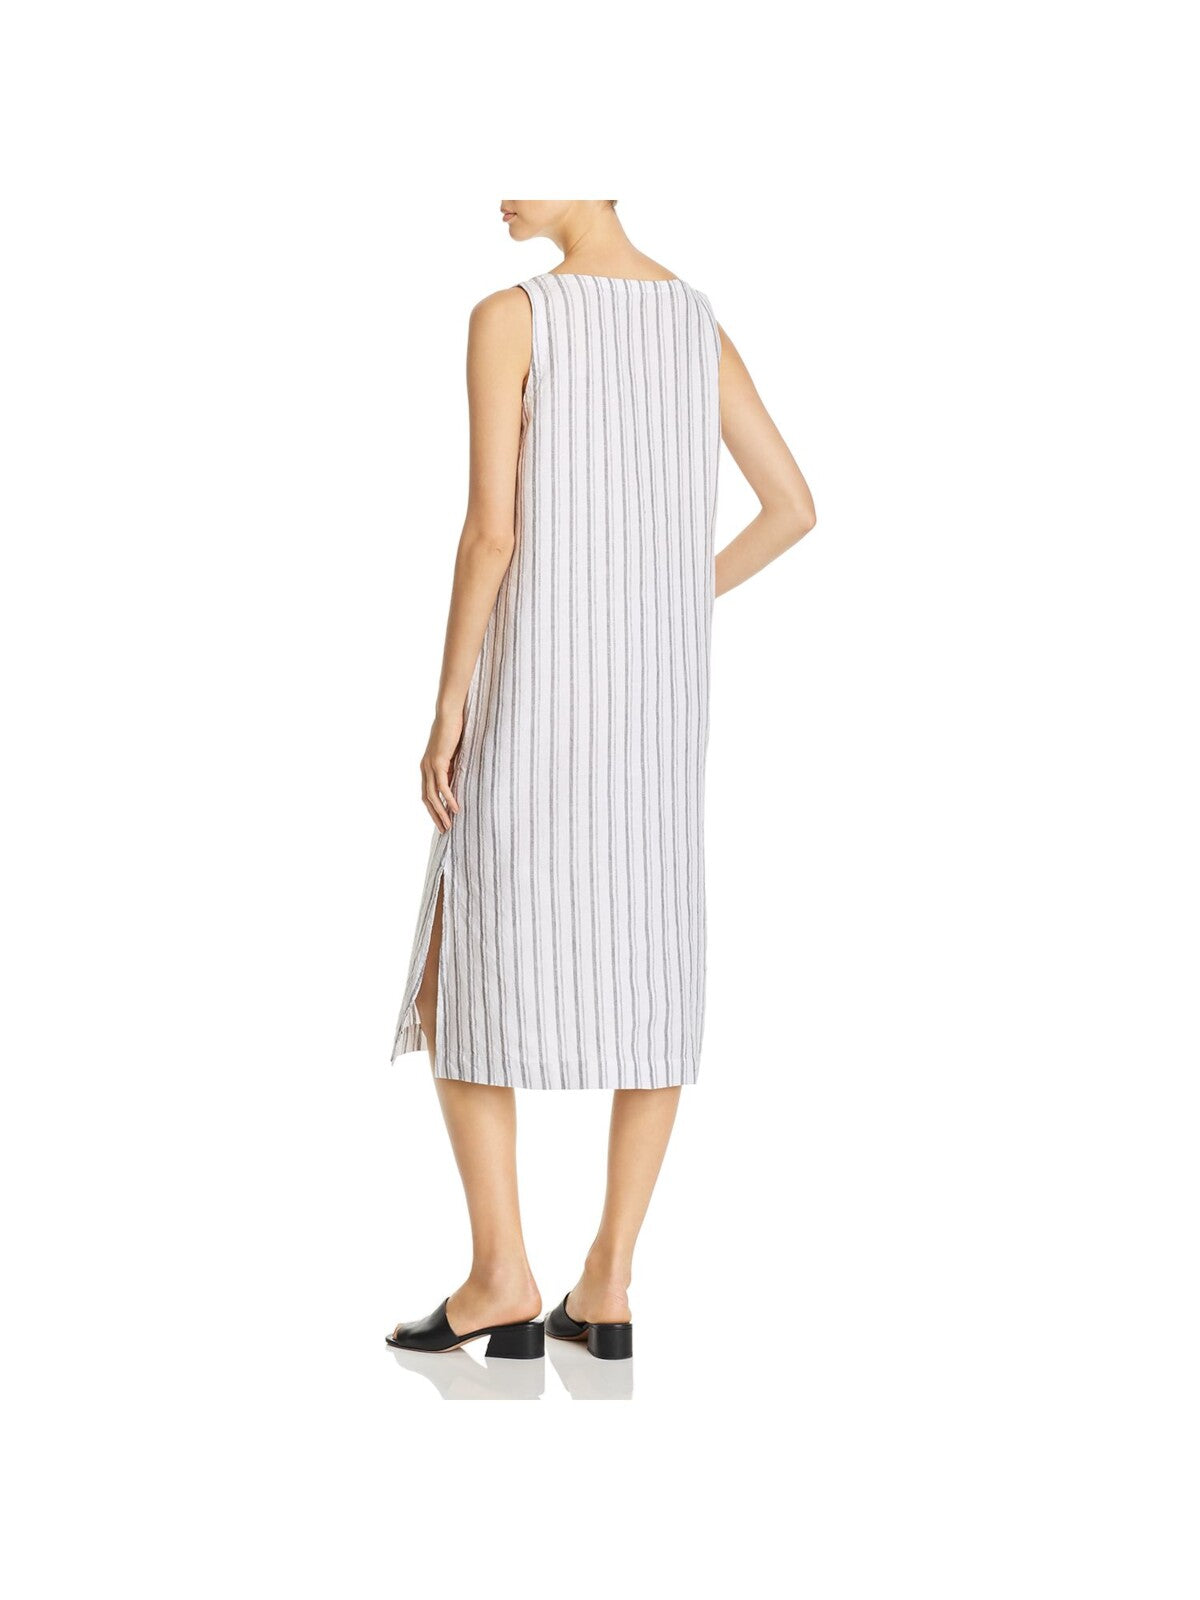 EILEEN FISHER Womens White Striped Sleeveless V Neck Midi Shift Dress L